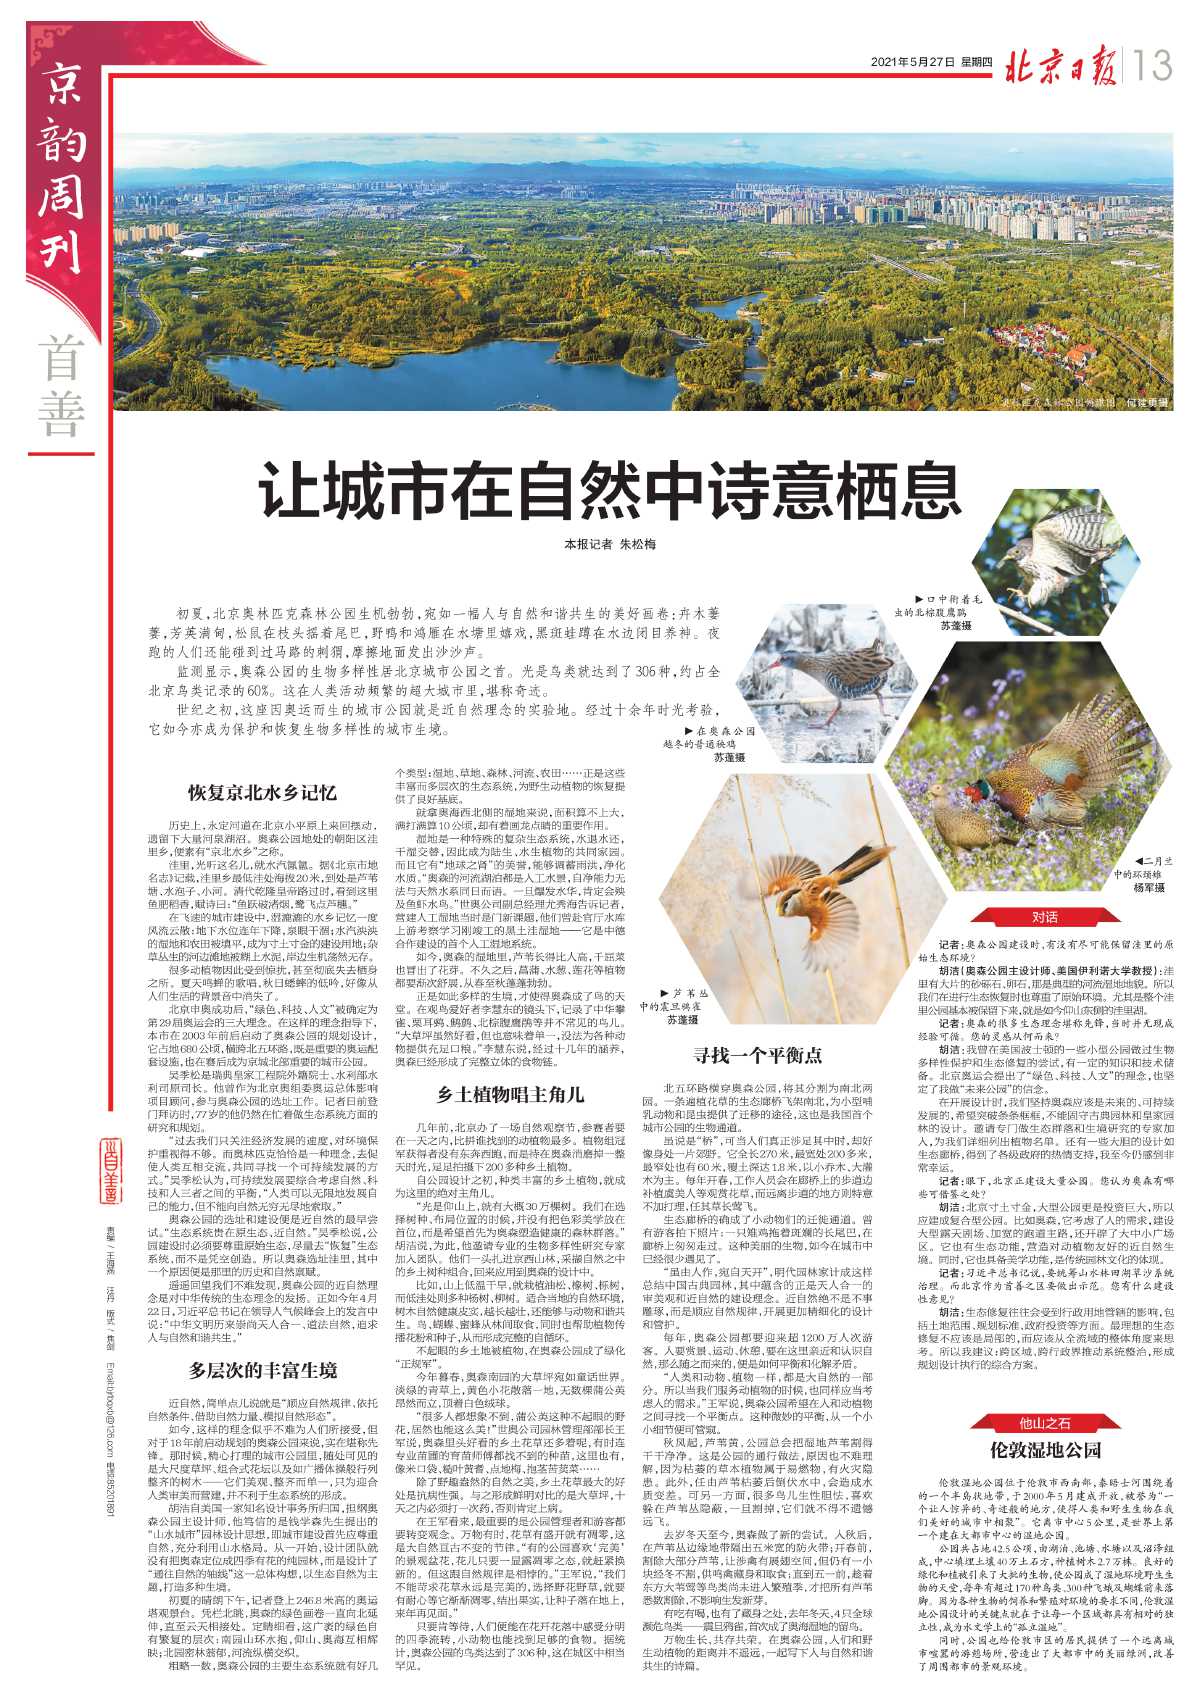 0527北京日报-让城市在自然中诗意栖息.jpg